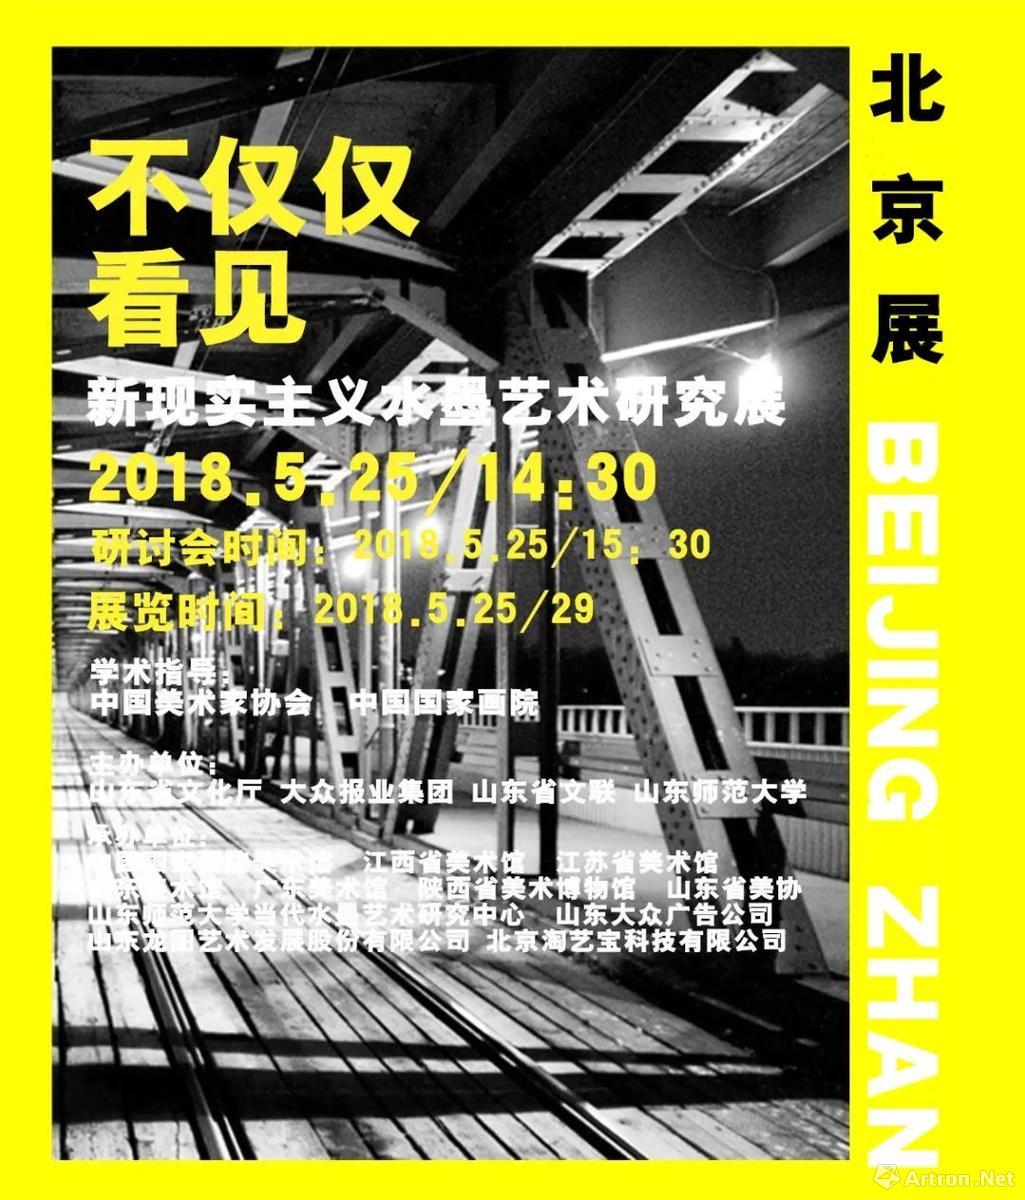 “不仅仅看见”新现实主义水墨艺术研究展全国巡展-北京